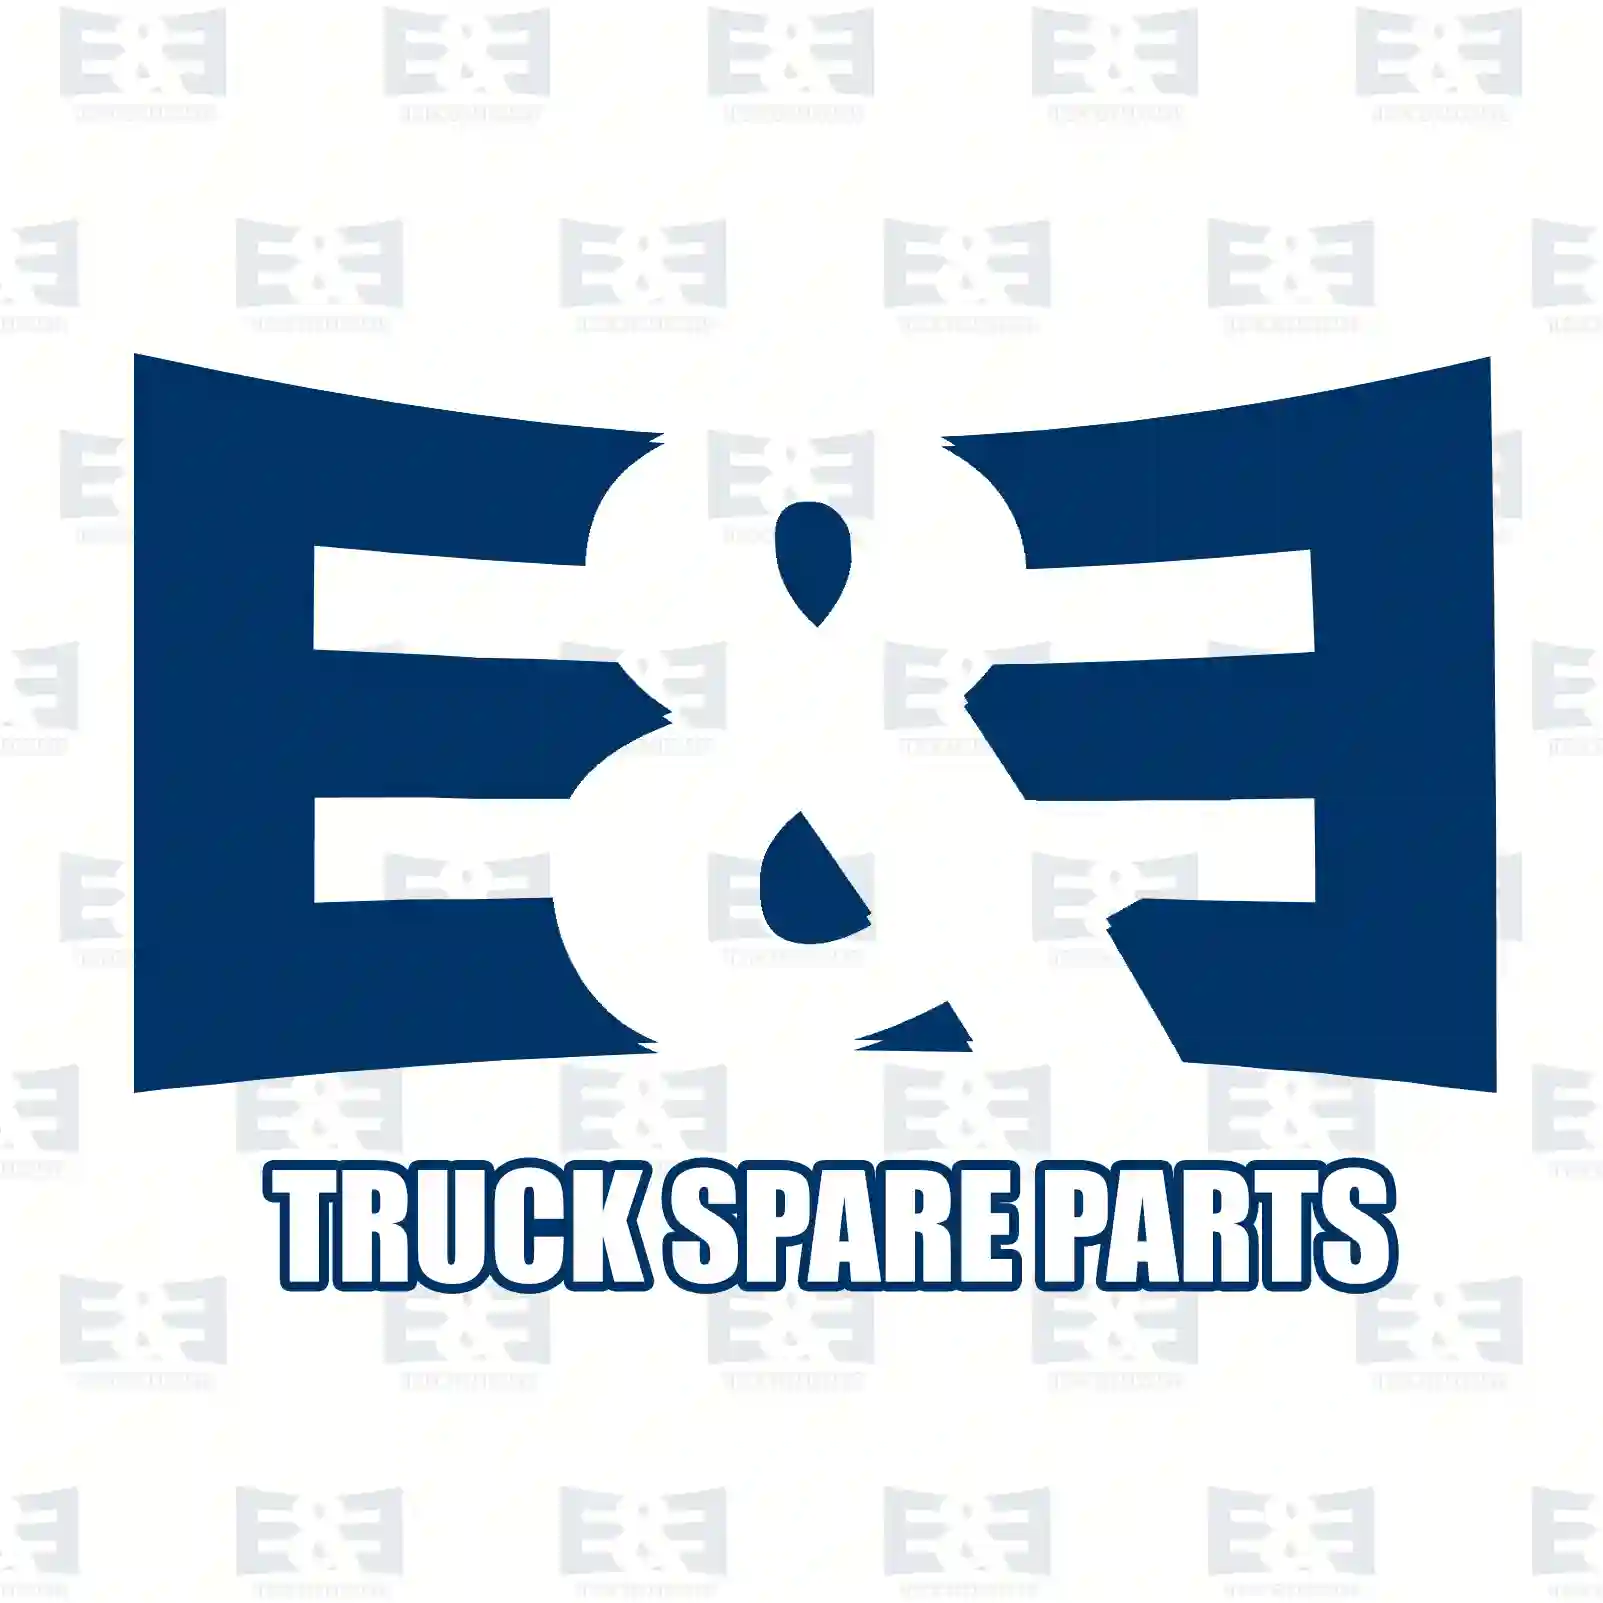 Oil seal, 2E2279163, 0140335, 140335, 0069974946, 6876142 ||  2E2279163 E&E Truck Spare Parts | Truck Spare Parts, Auotomotive Spare Parts Oil seal, 2E2279163, 0140335, 140335, 0069974946, 6876142 ||  2E2279163 E&E Truck Spare Parts | Truck Spare Parts, Auotomotive Spare Parts